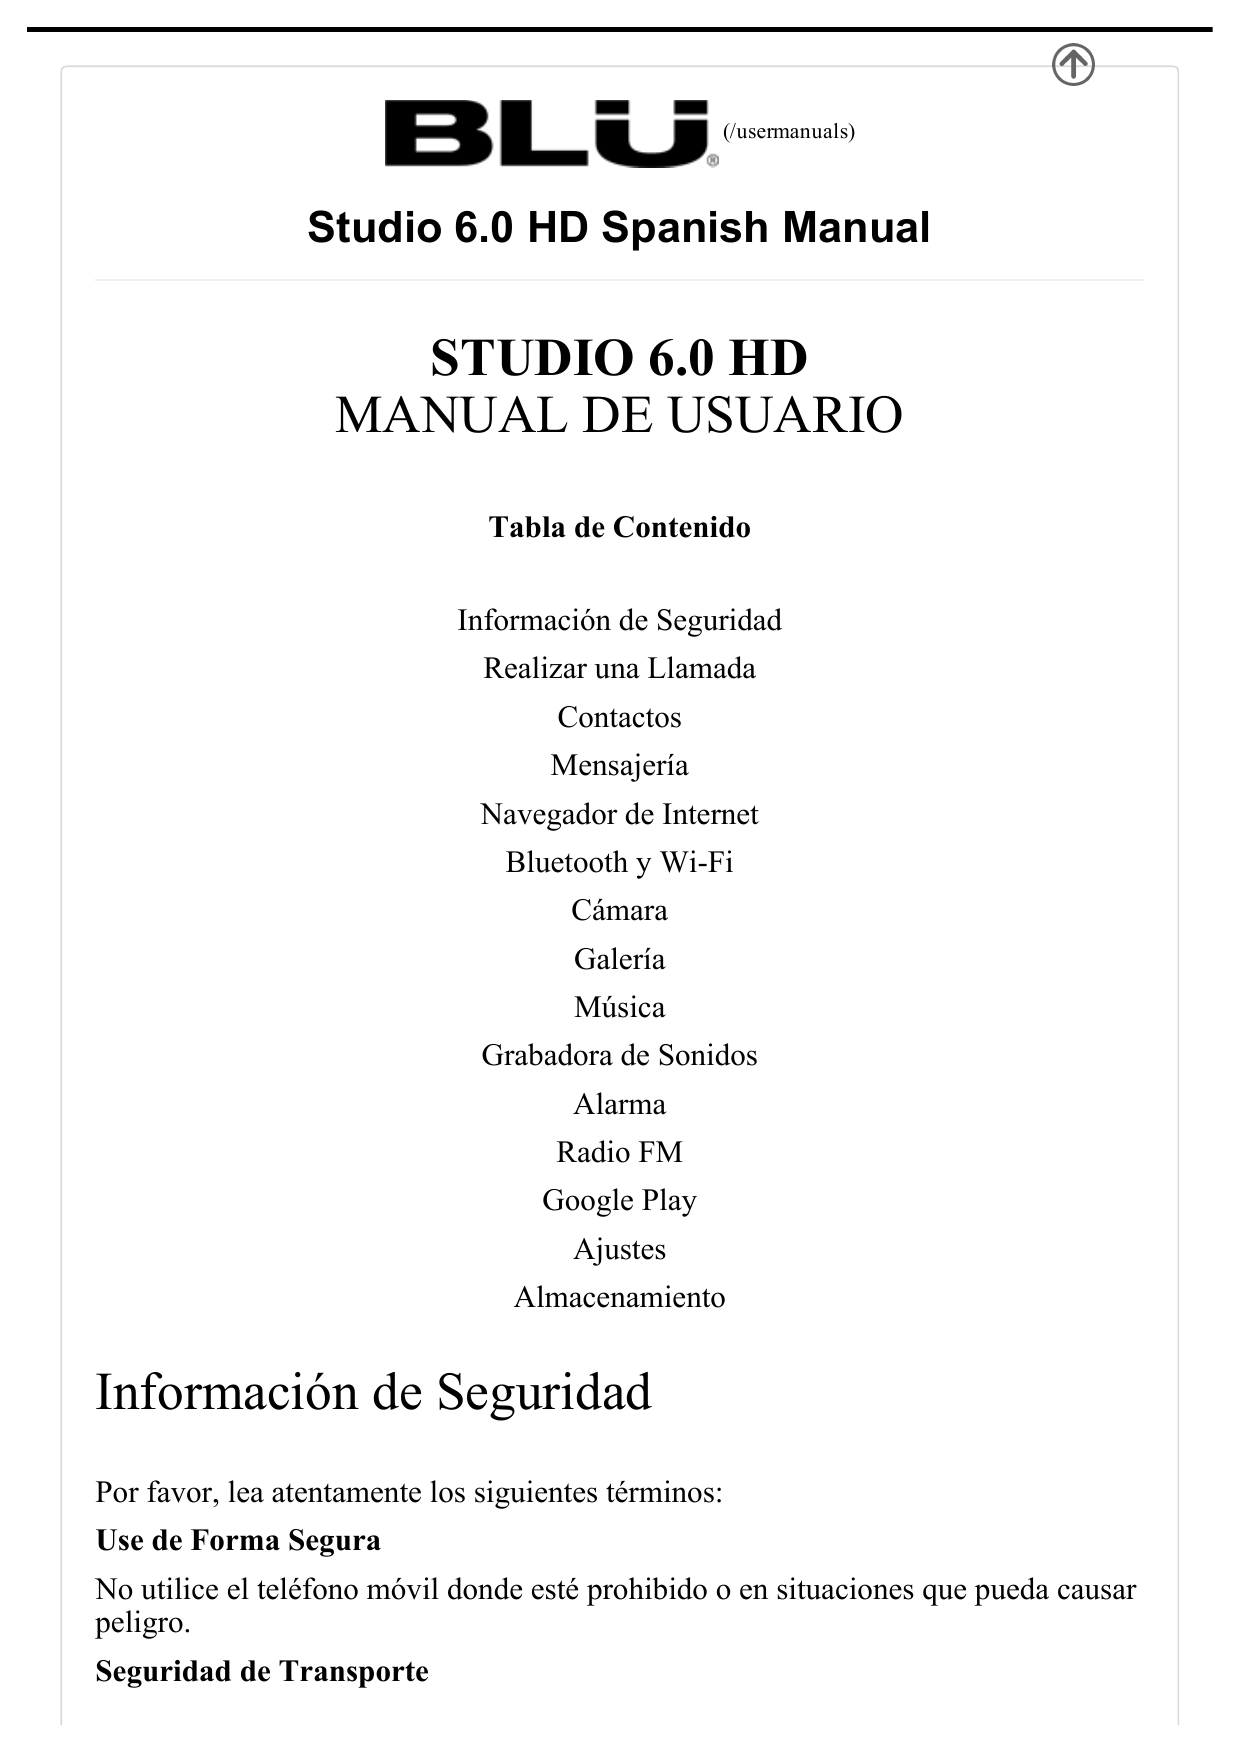  (/usermanuals)Studio 6.0 HD Spanish Manual STUDIO 6.0 HDMANUAL DE USUARIO Tabla de Contenido Información de SeguridadRealizar u